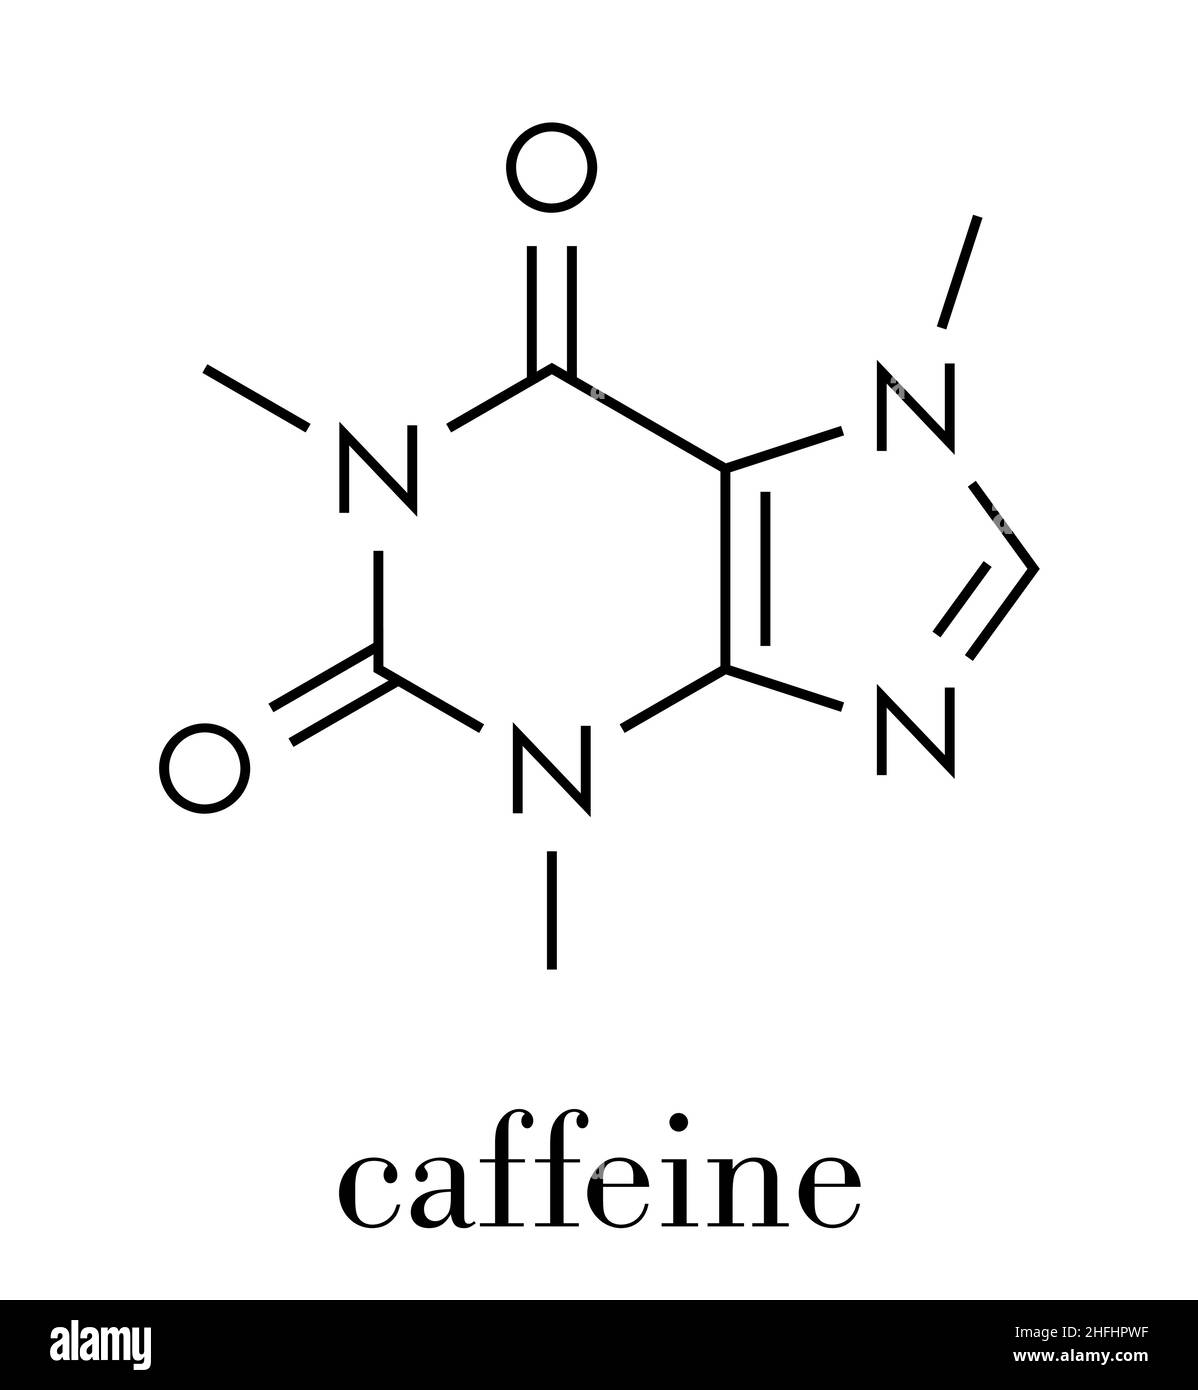 Koffeinstimulierendes Molekül. In Kaffee, Tee und vielen Soft- und Energy-Getränken. Skelettformel. Stock Vektor